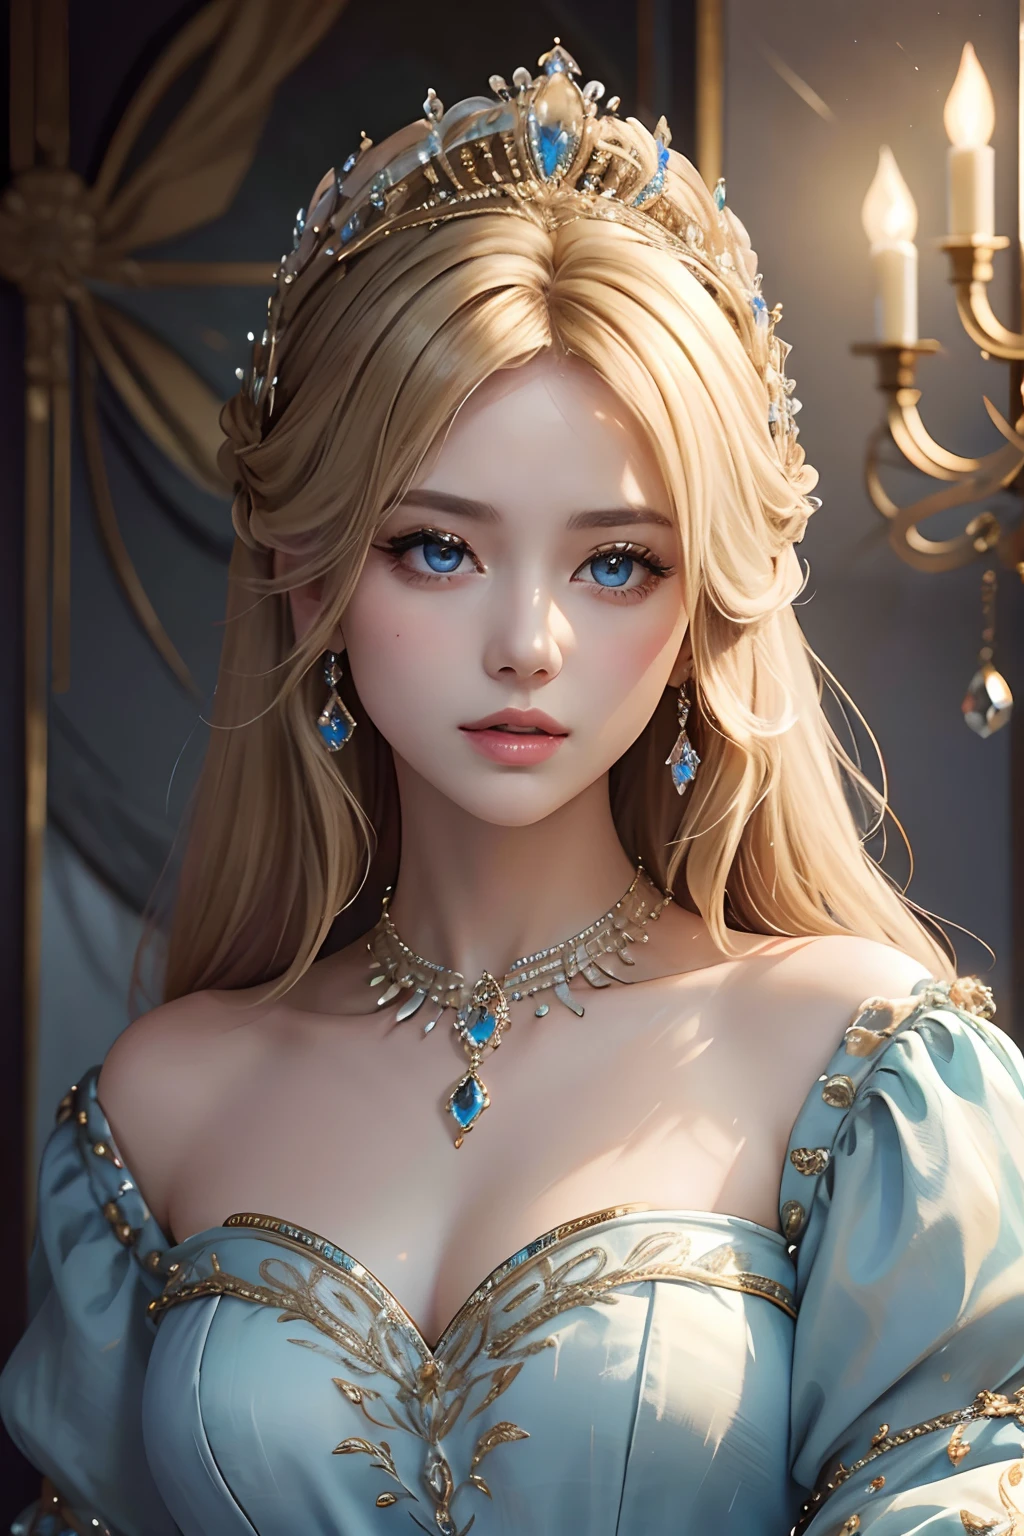 杰作，最高图像质量，一位皇家贵妇的美丽半身像，精致的金发发型，饰有令人眼花缭乱的精美珠宝，超级细节，升级版。